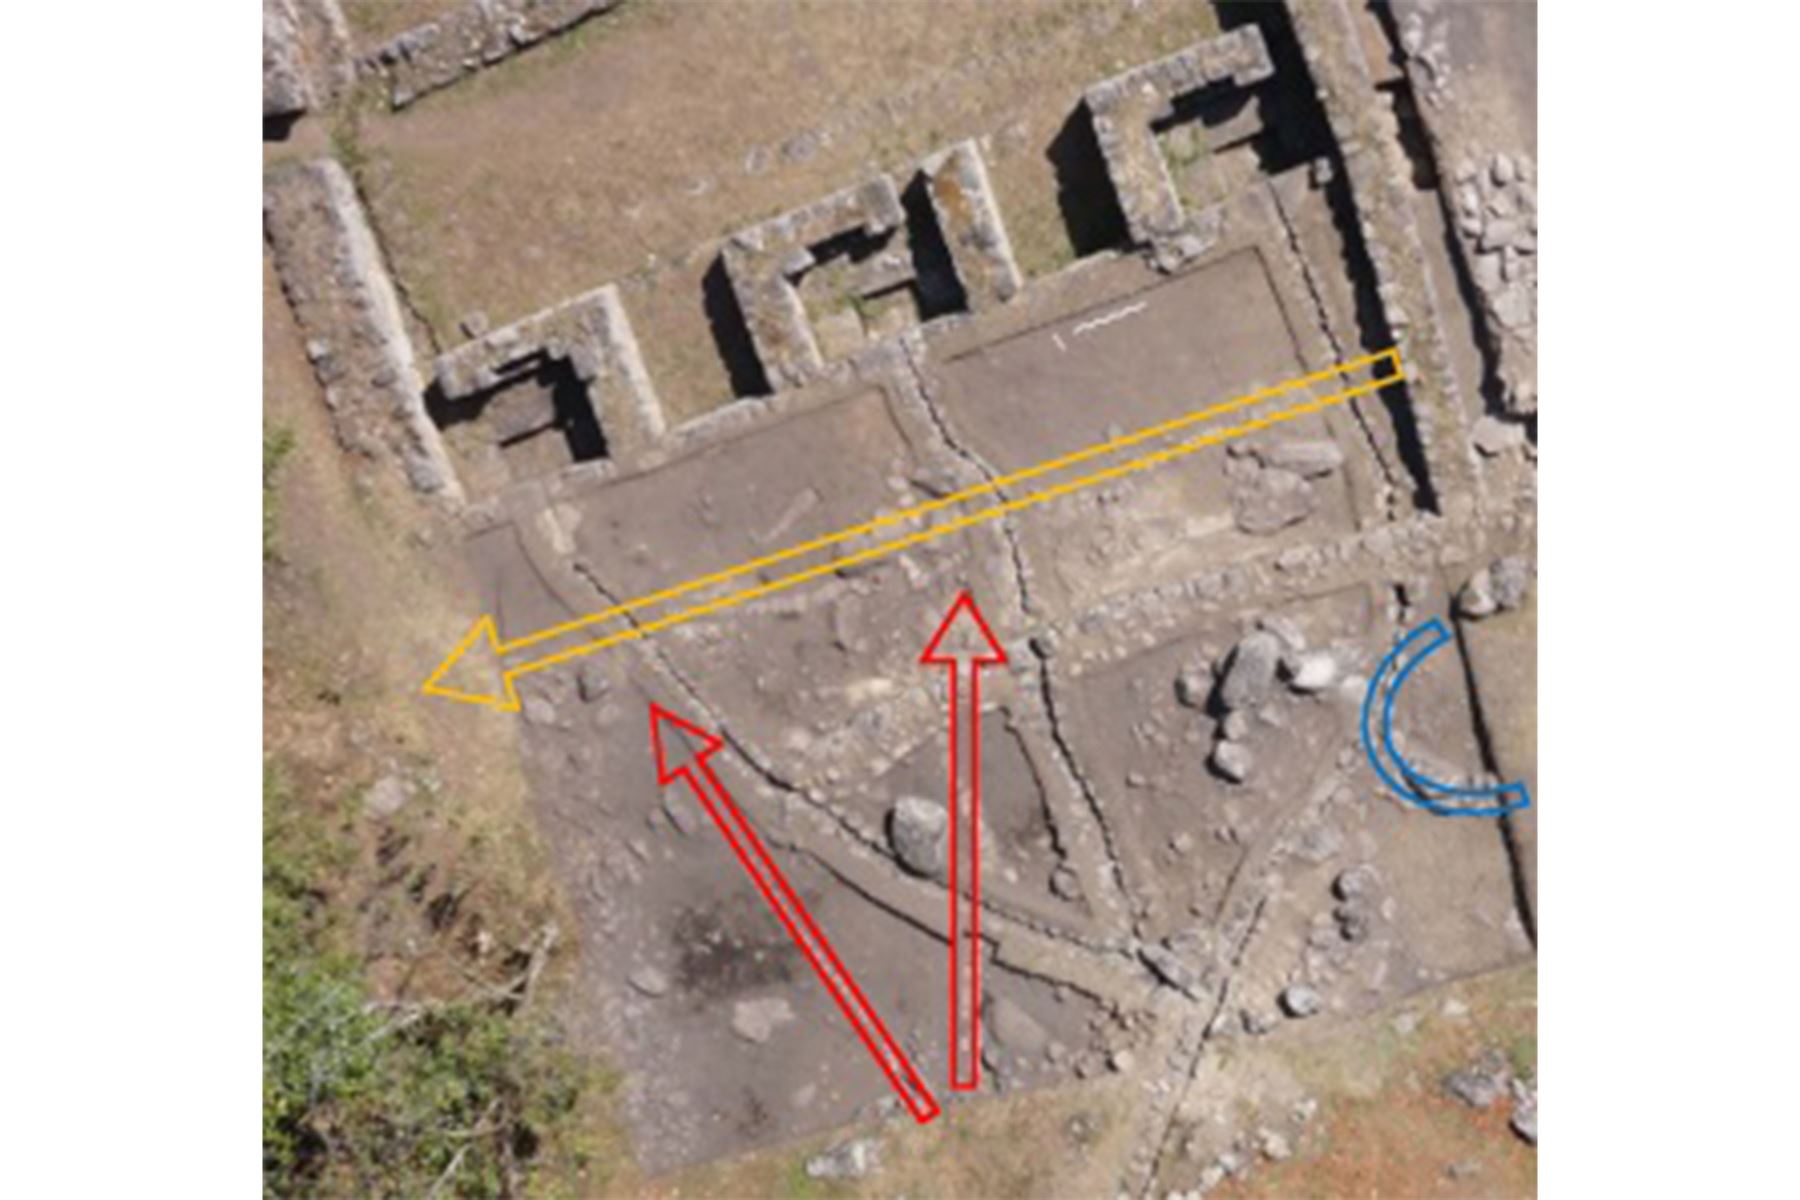 Las flechas indican las direcciones de los canales descubiertos y el muro semicircular en el sitio arqueológico de Chachabamba, región Cusco. Foto: B. Cmielewski, análisis de D. Sieczkowska.